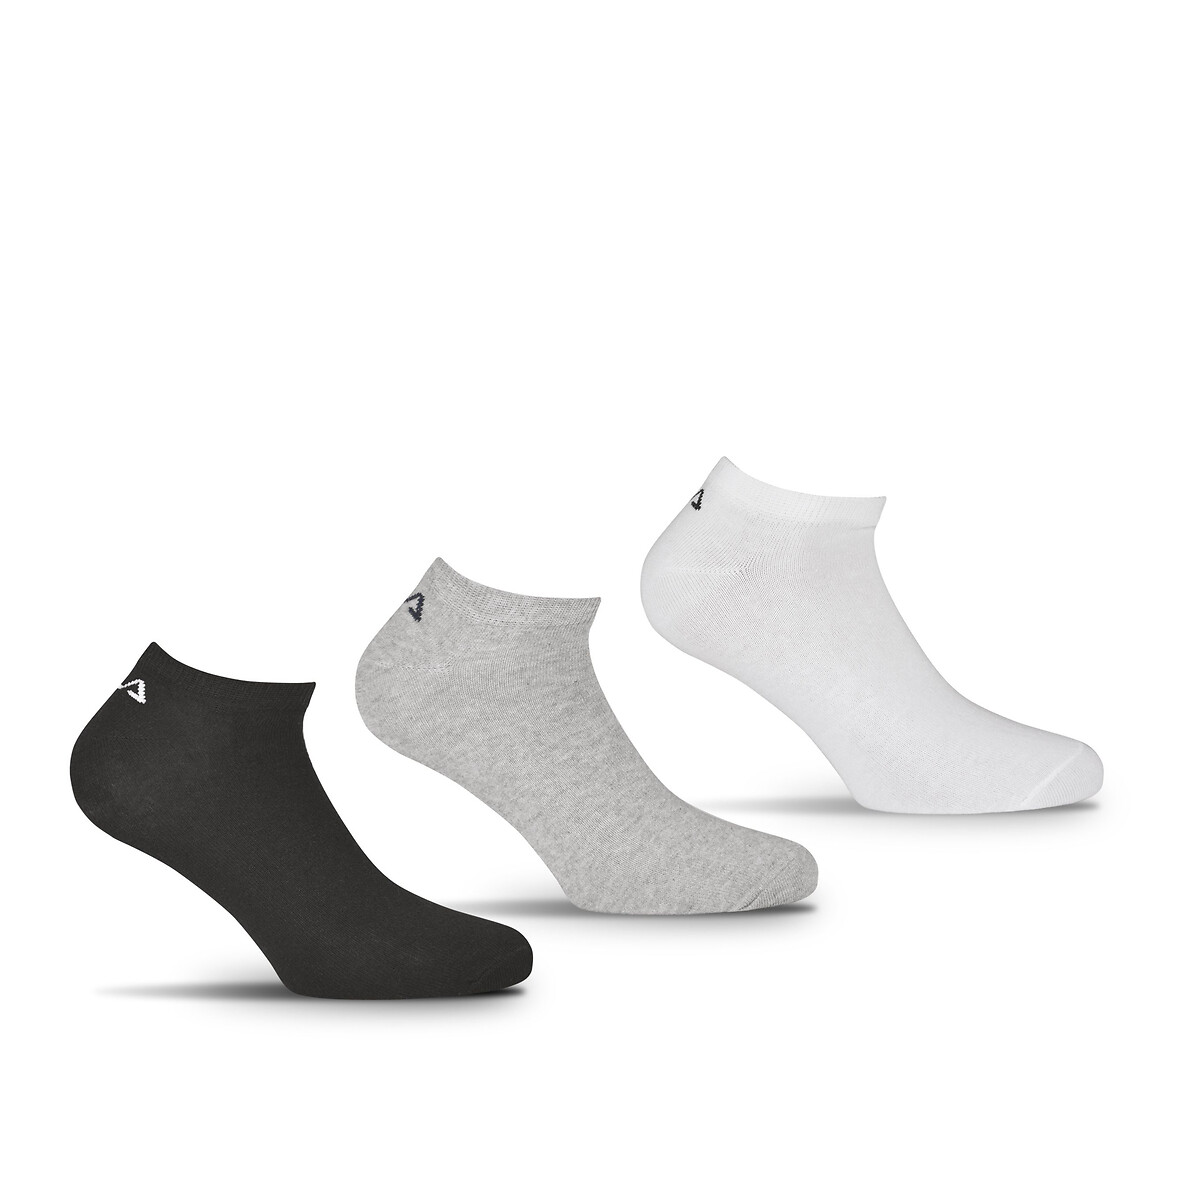 Overtekenen Aanvankelijk scheerapparaat Set van 6 paar sokken invisible plain grijs + wit + zwart Fila | La Redoute